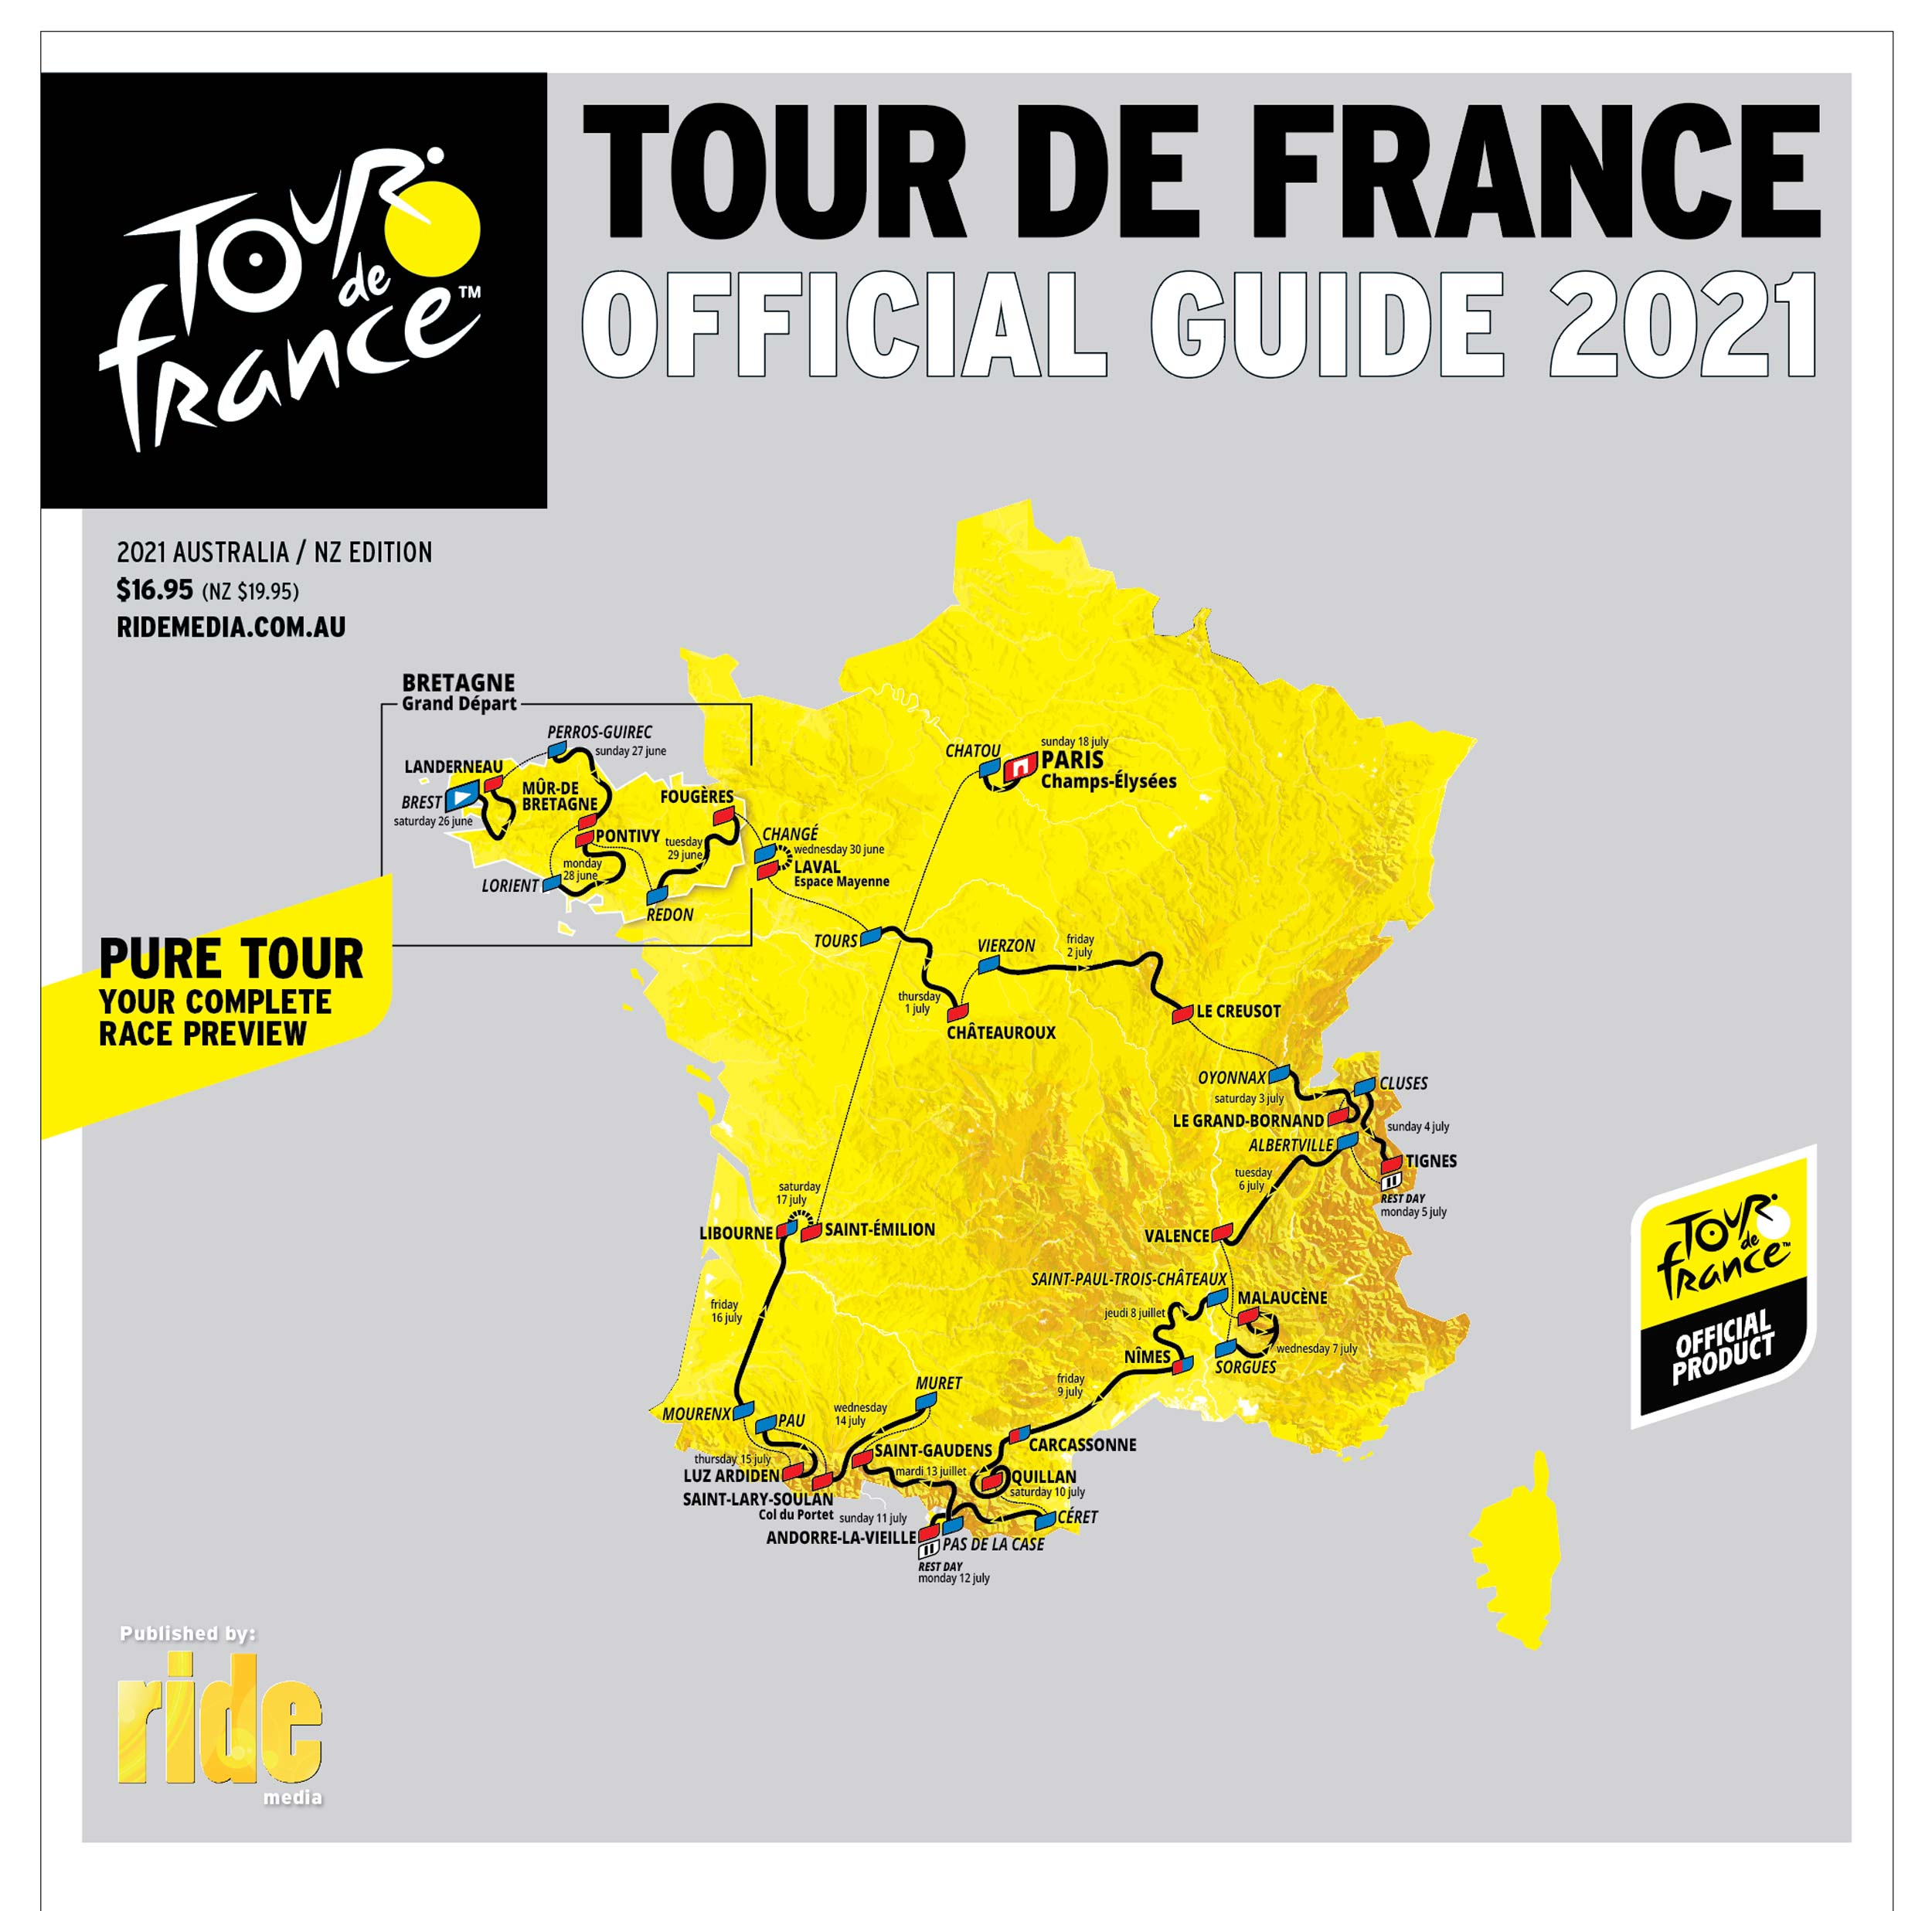 2021 Official Tour De France Guide Ride Media